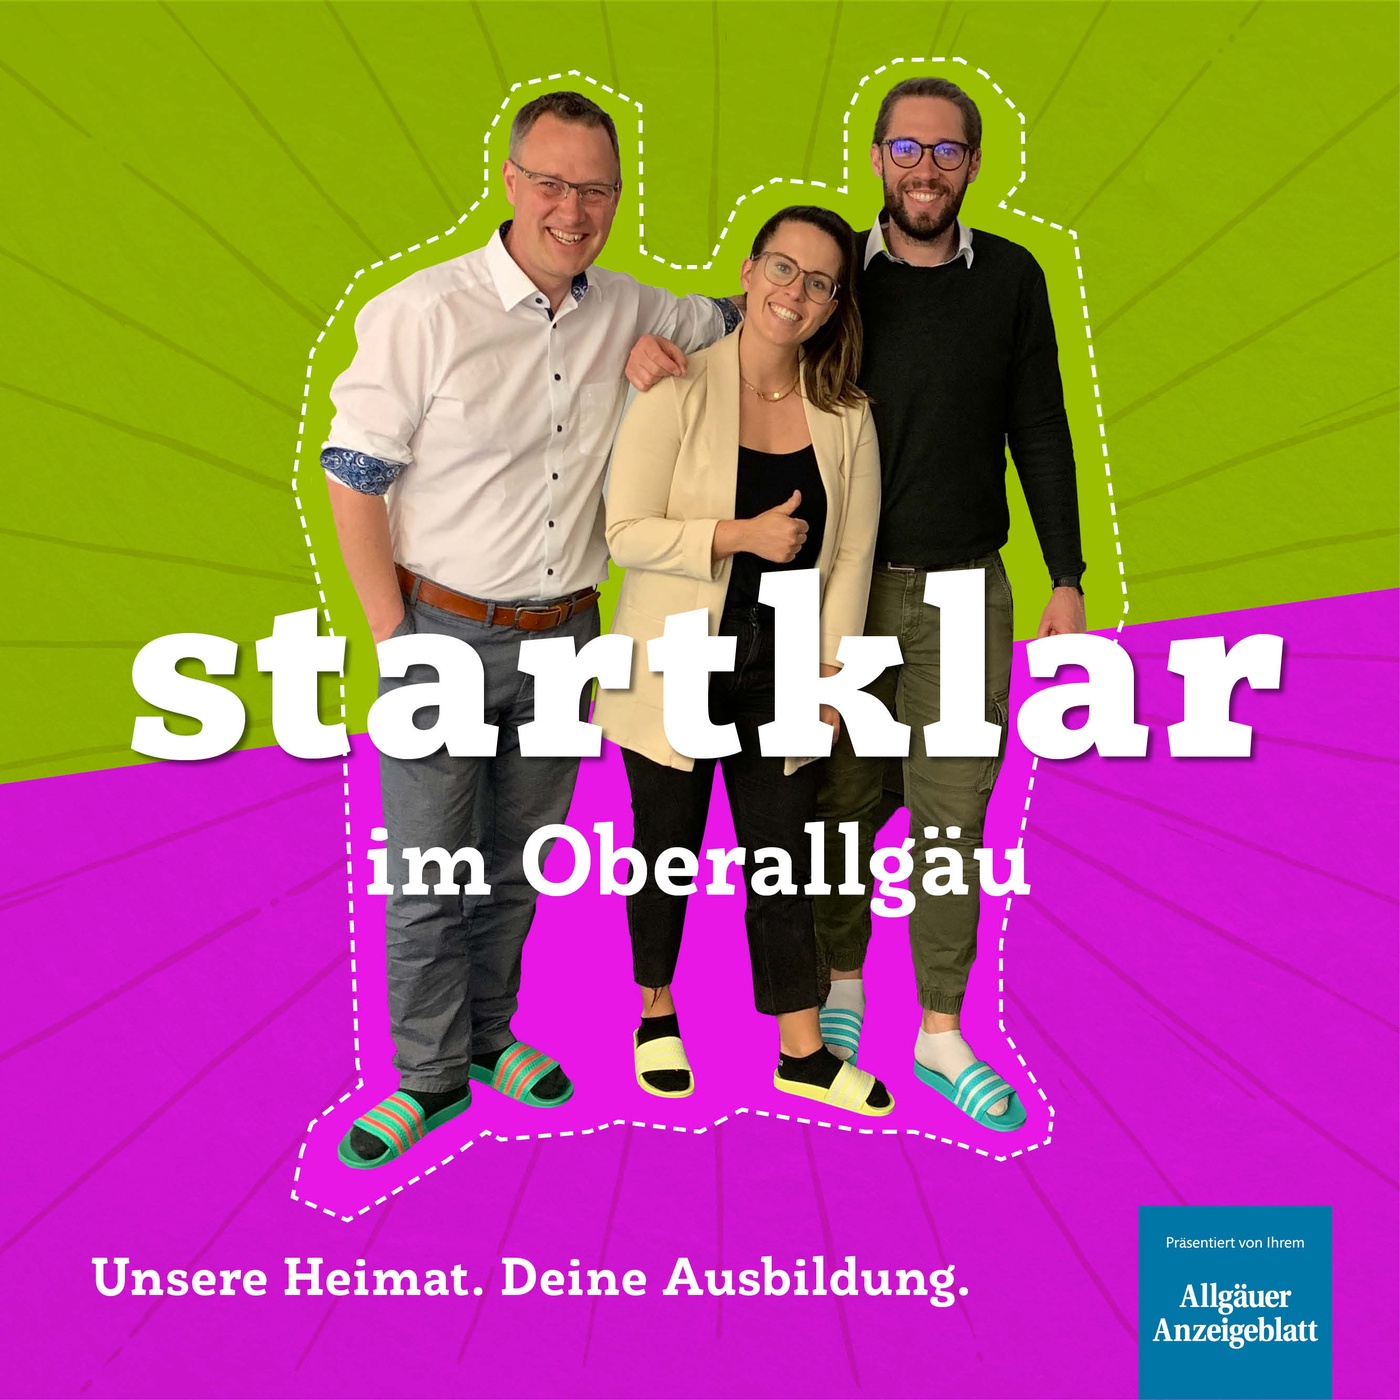 startklar_oa